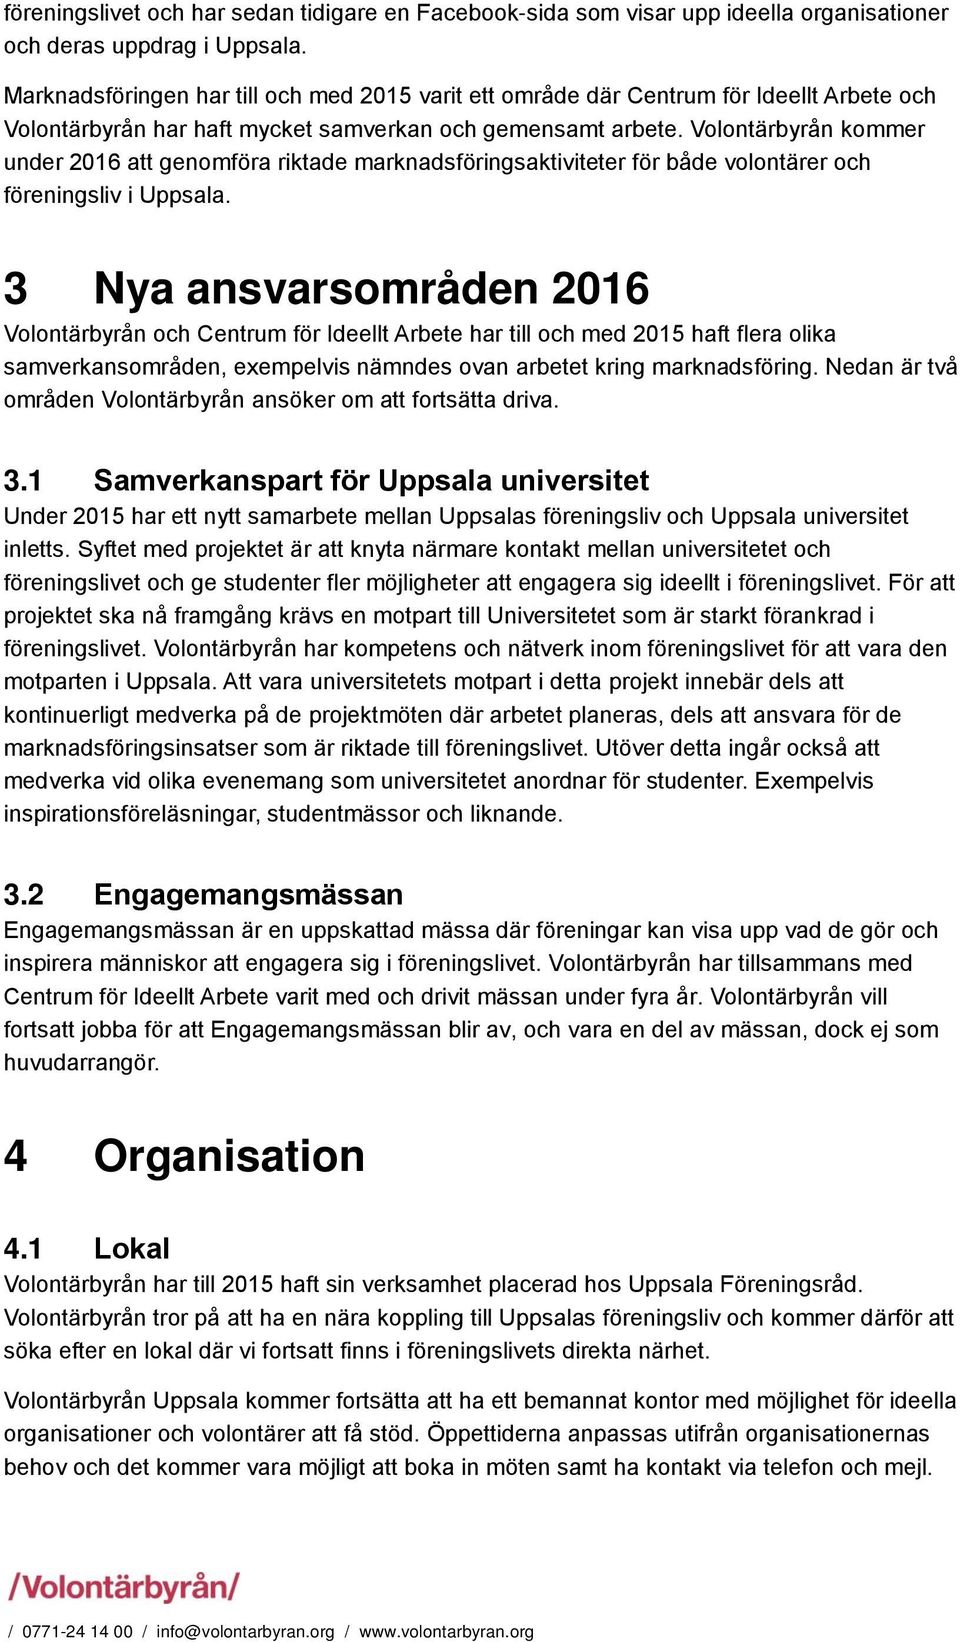 Volontärbyrån kommer under 2016 att genomföra riktade marknadsföringsaktiviteter för både volontärer och föreningsliv i Uppsala.